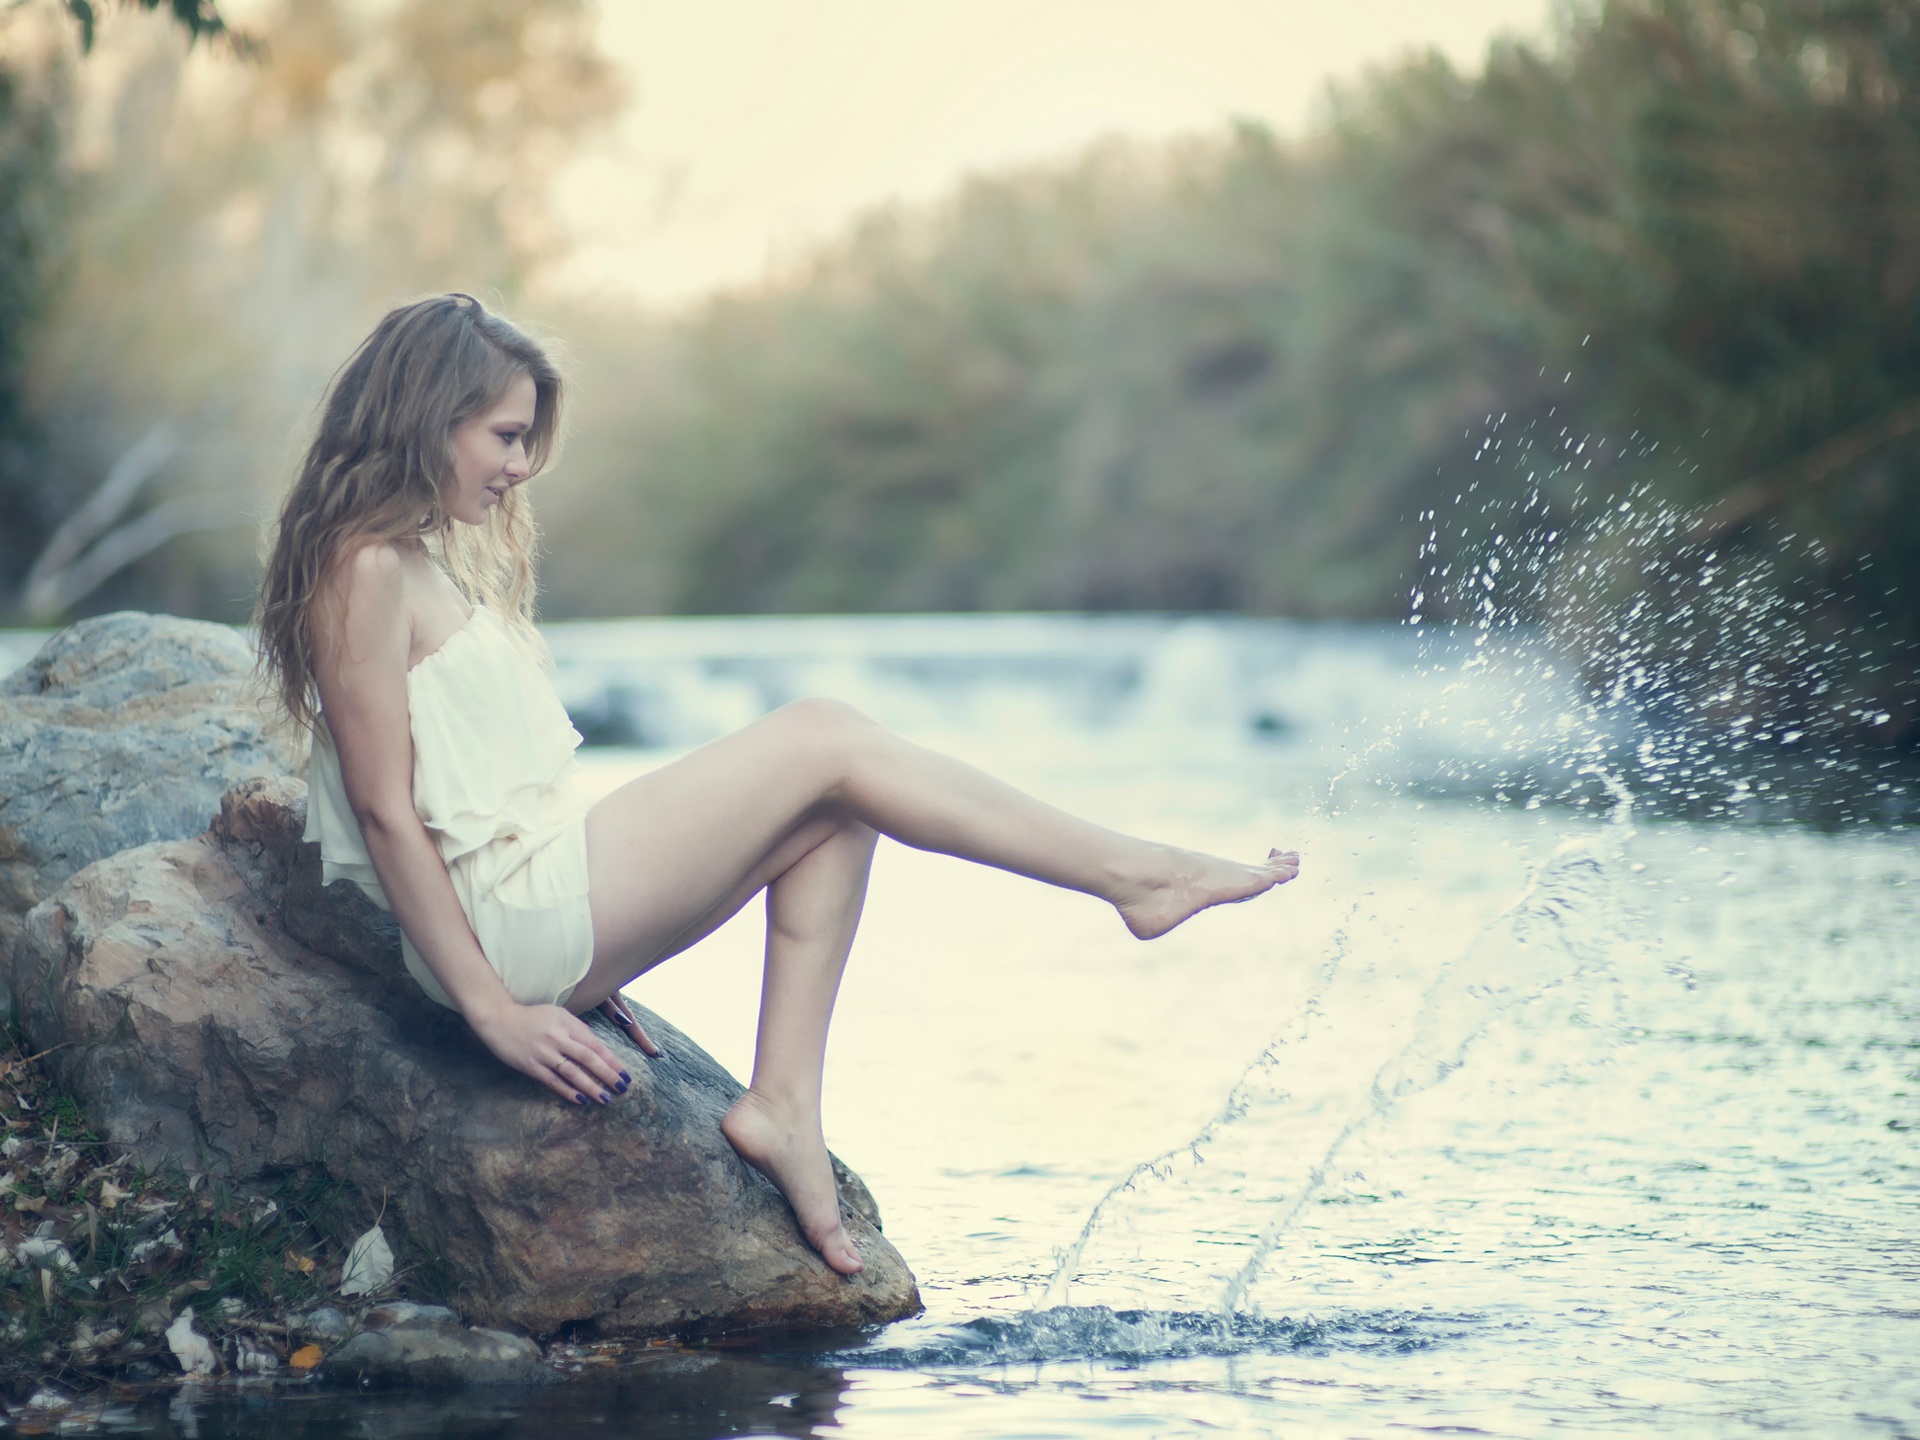 White-dress-girl-legs-water-splash_1920x1440.jpg